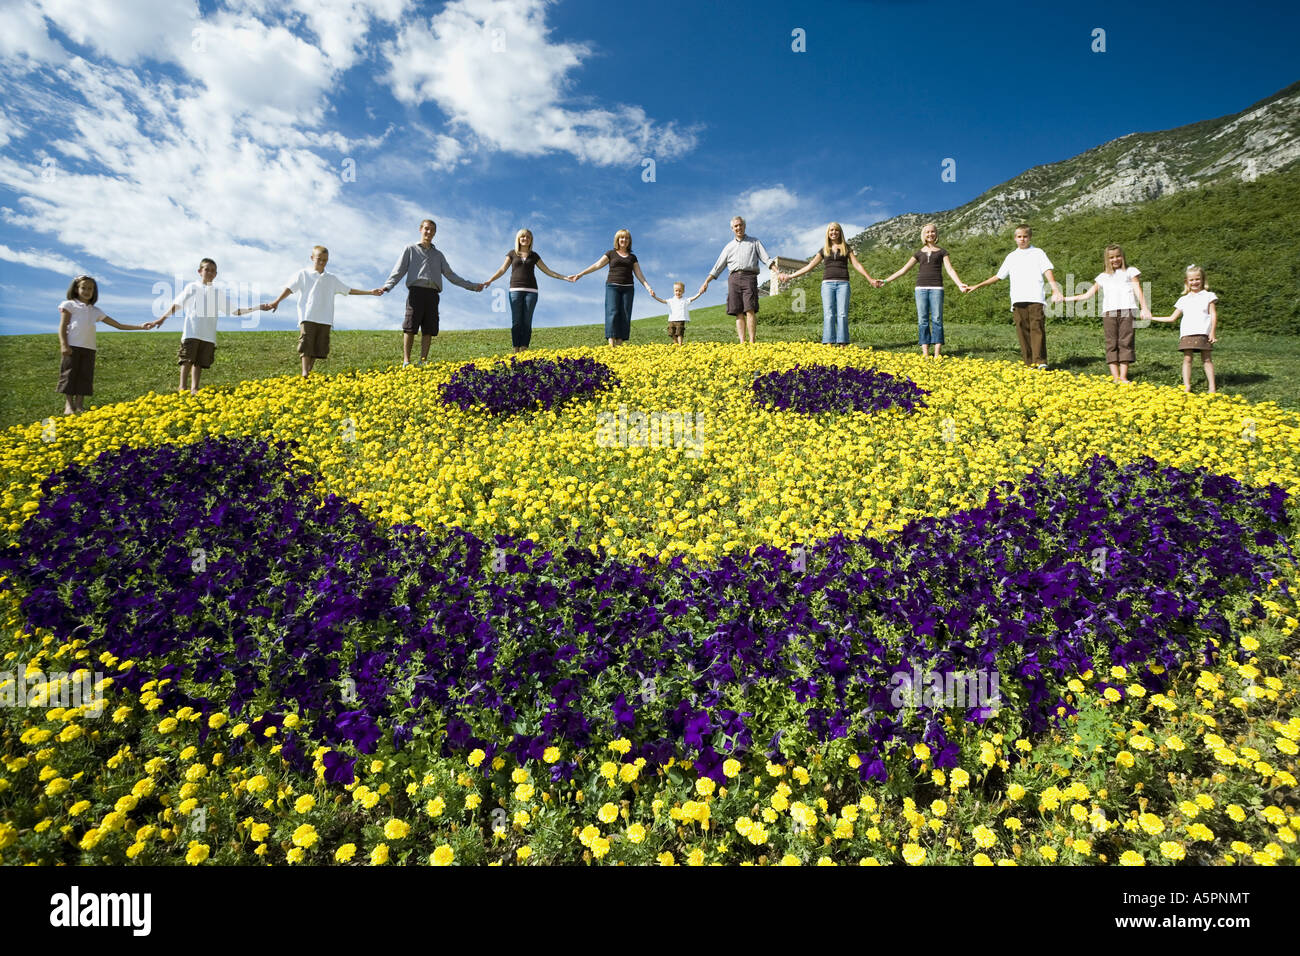 Groupe de grande famille sur colline avec happy face floral Banque D'Images